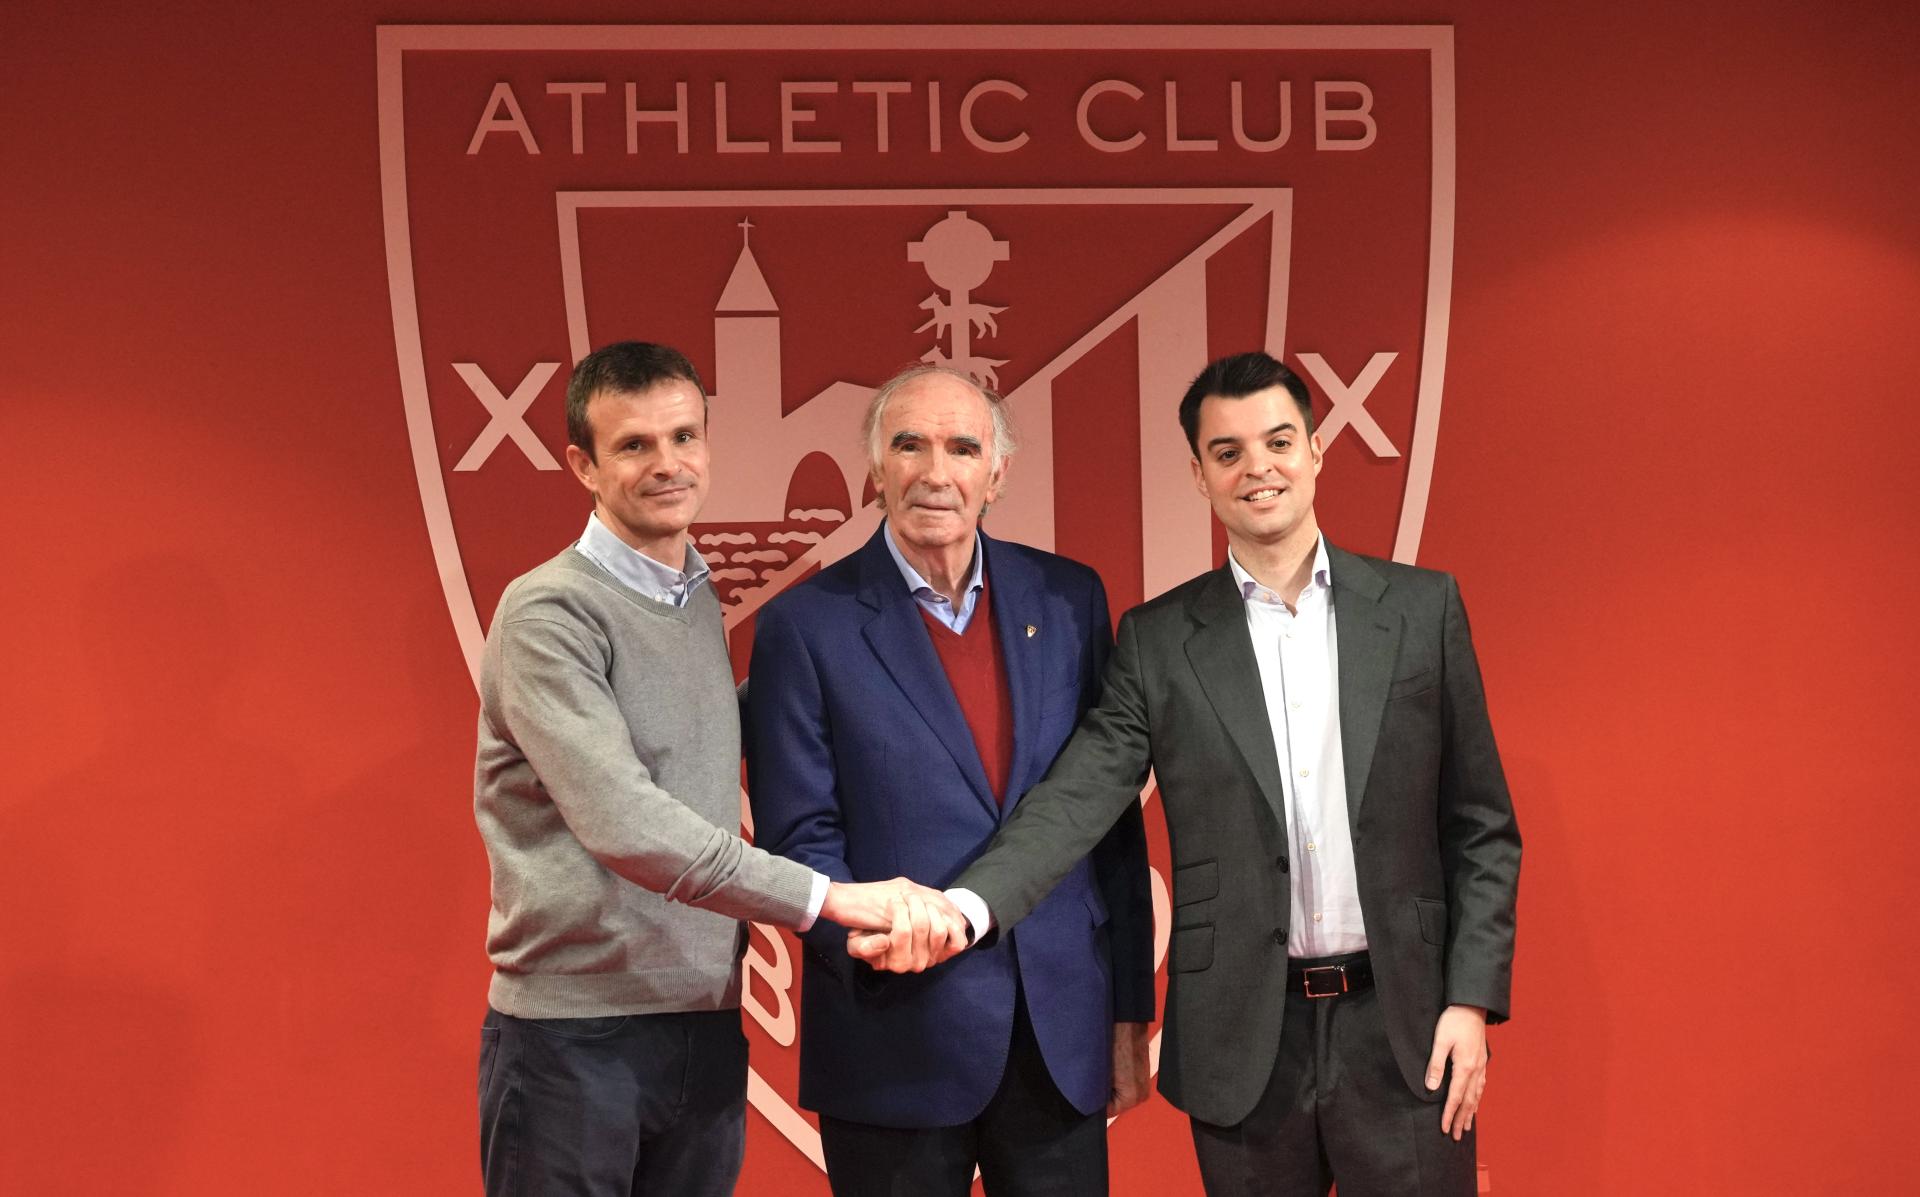 Presentación de Mikel González como nuevo Director de Fútbol del Athletic Club